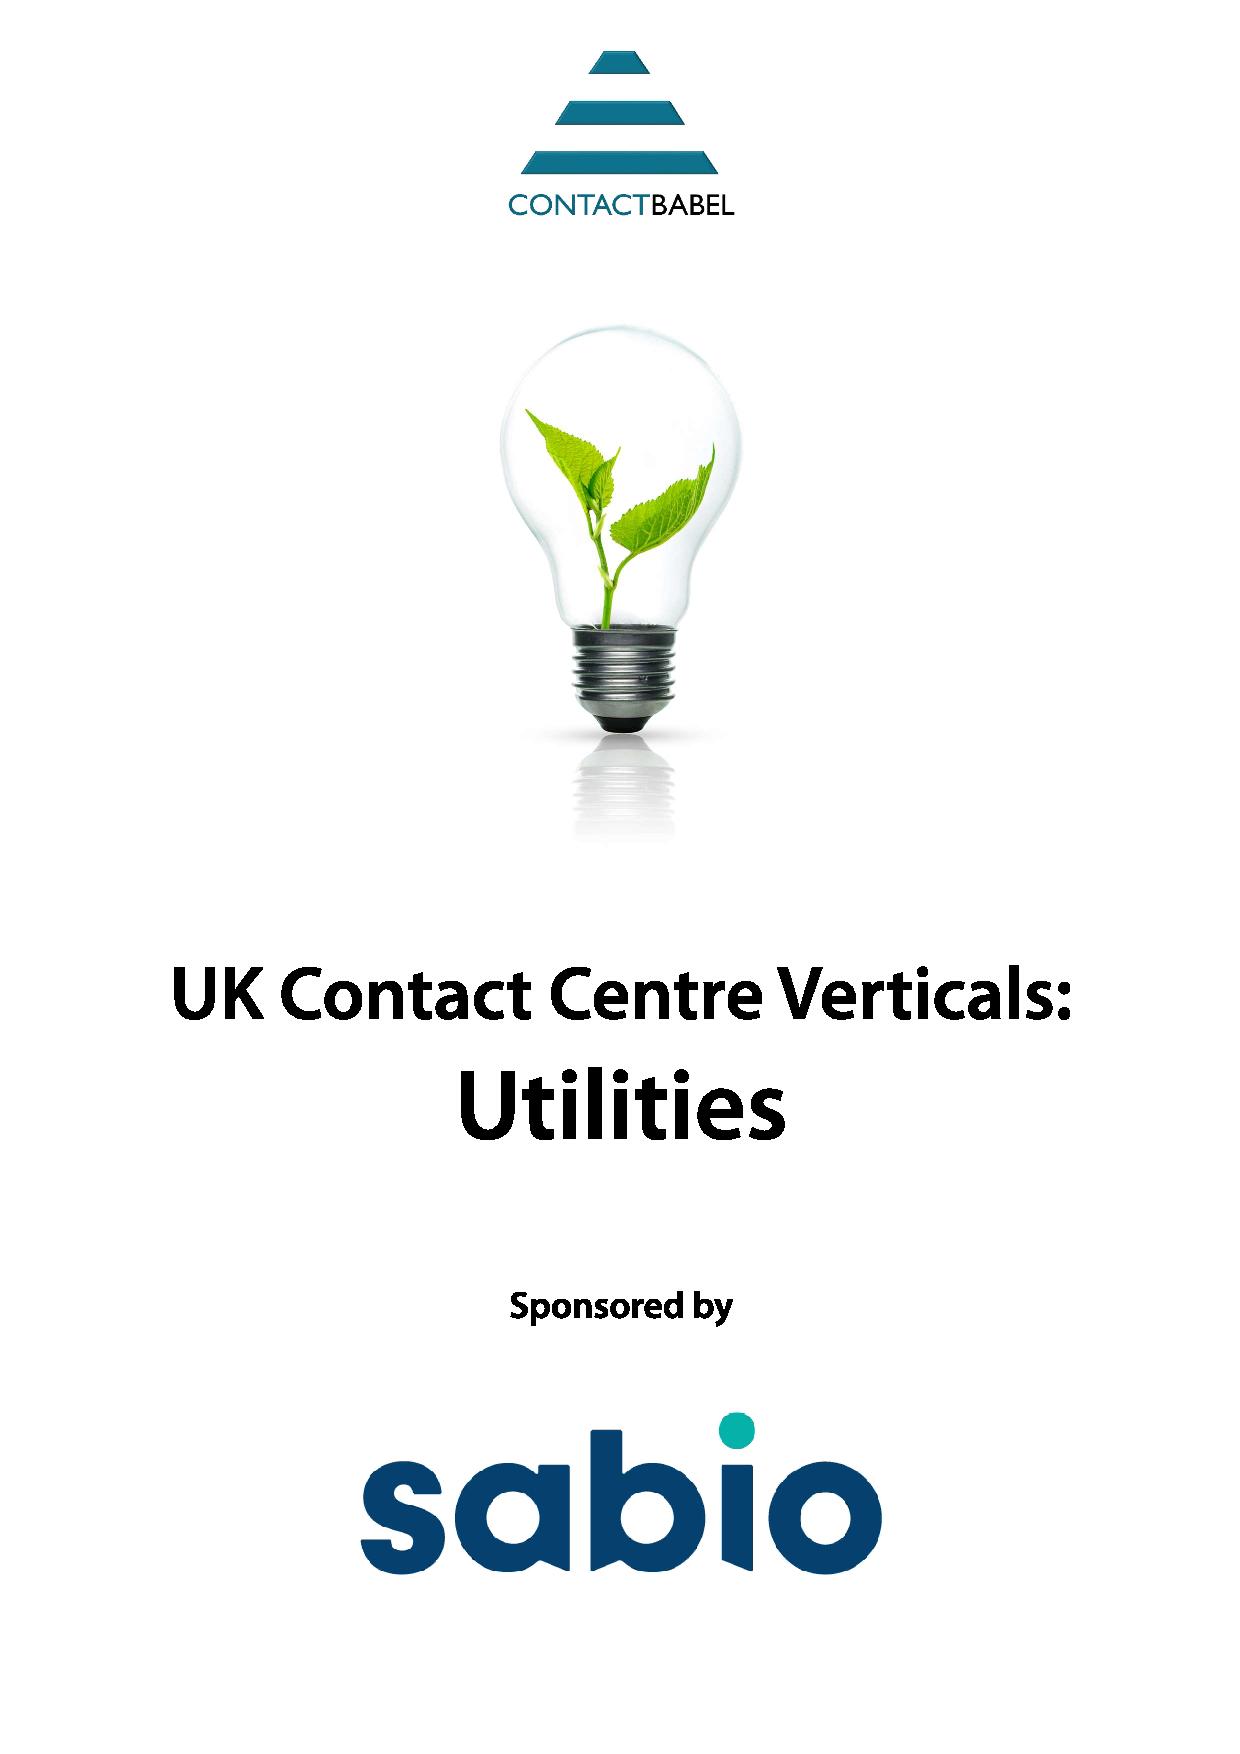 Contact Babel - UK Contact Centre Verticals: Utilities